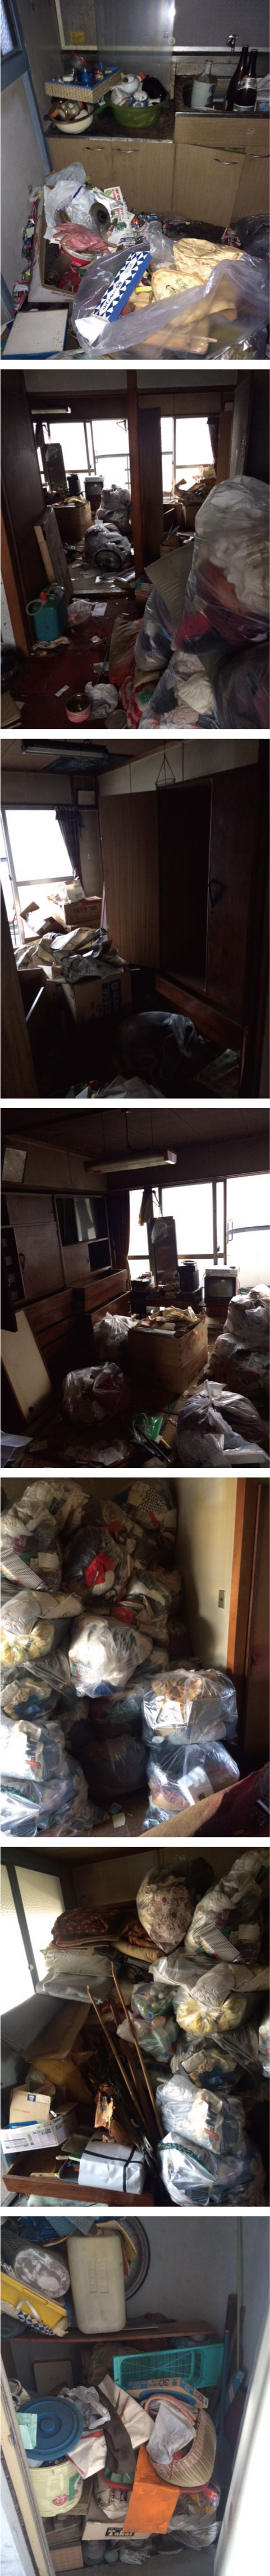 広島市でゴミ屋敷の遺品整理